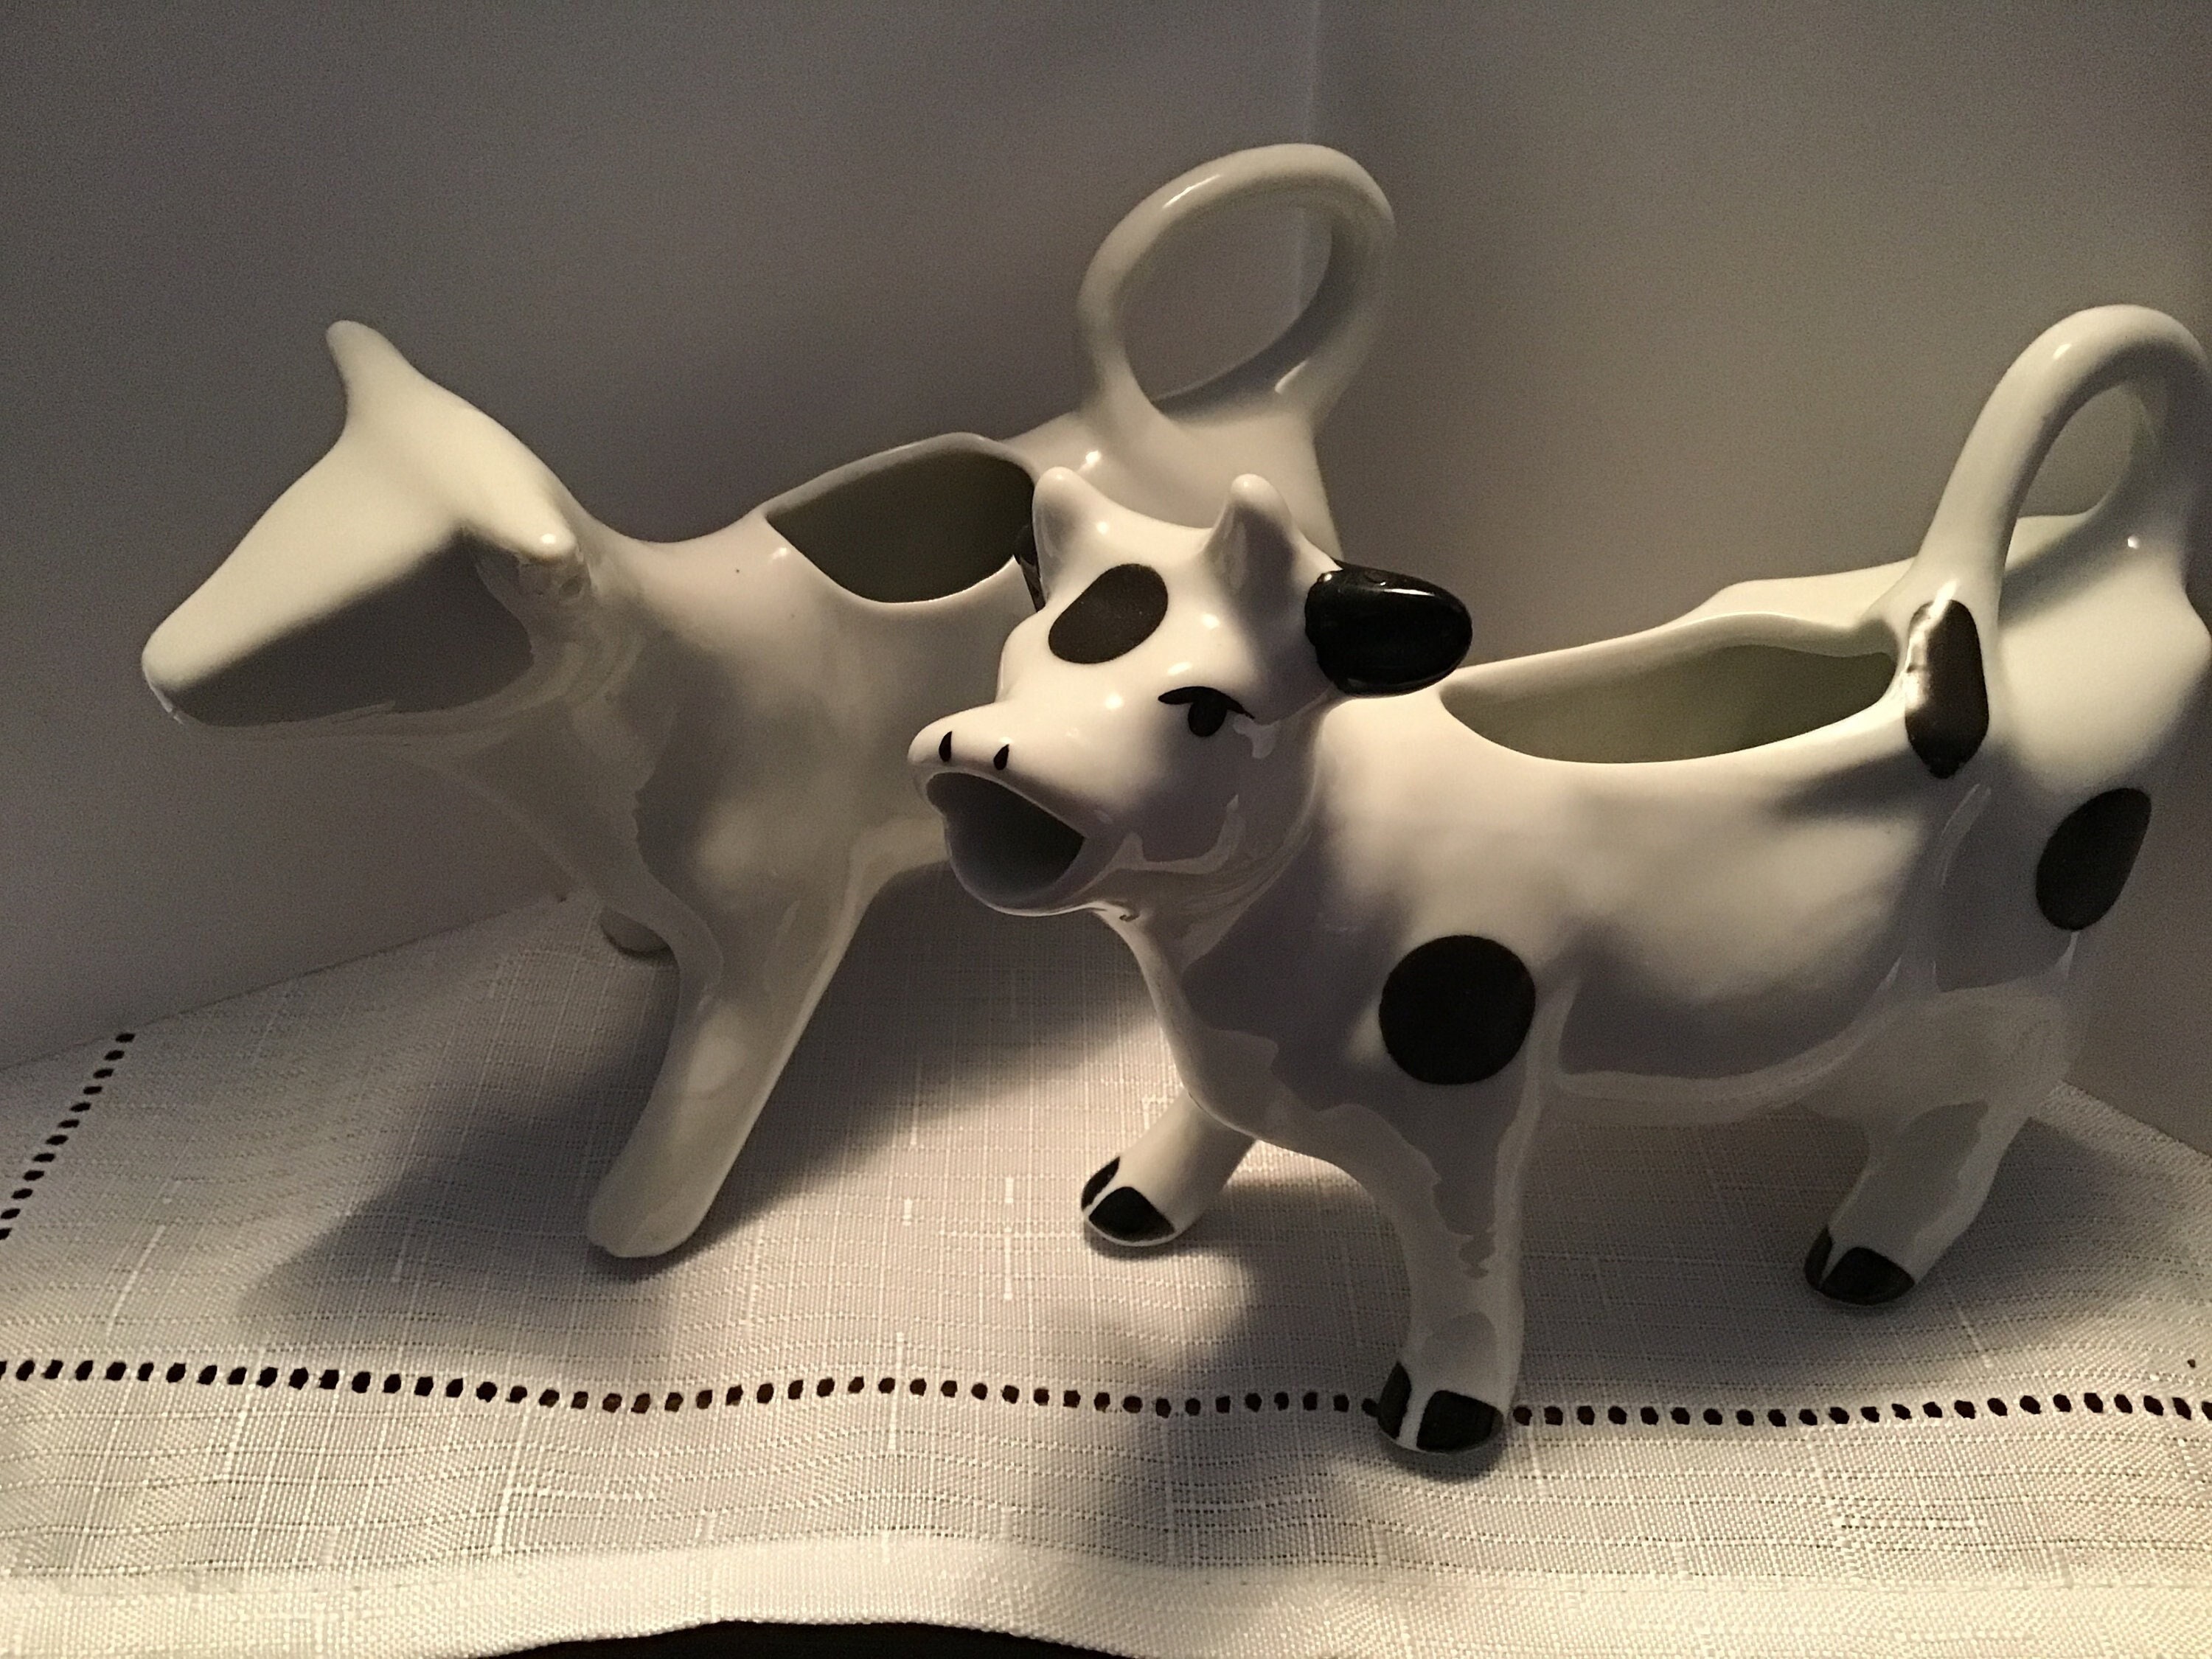 Cow Creamer Mini Pitcher 3” White Ceramic Decorative Child Tea Party Small  Vase